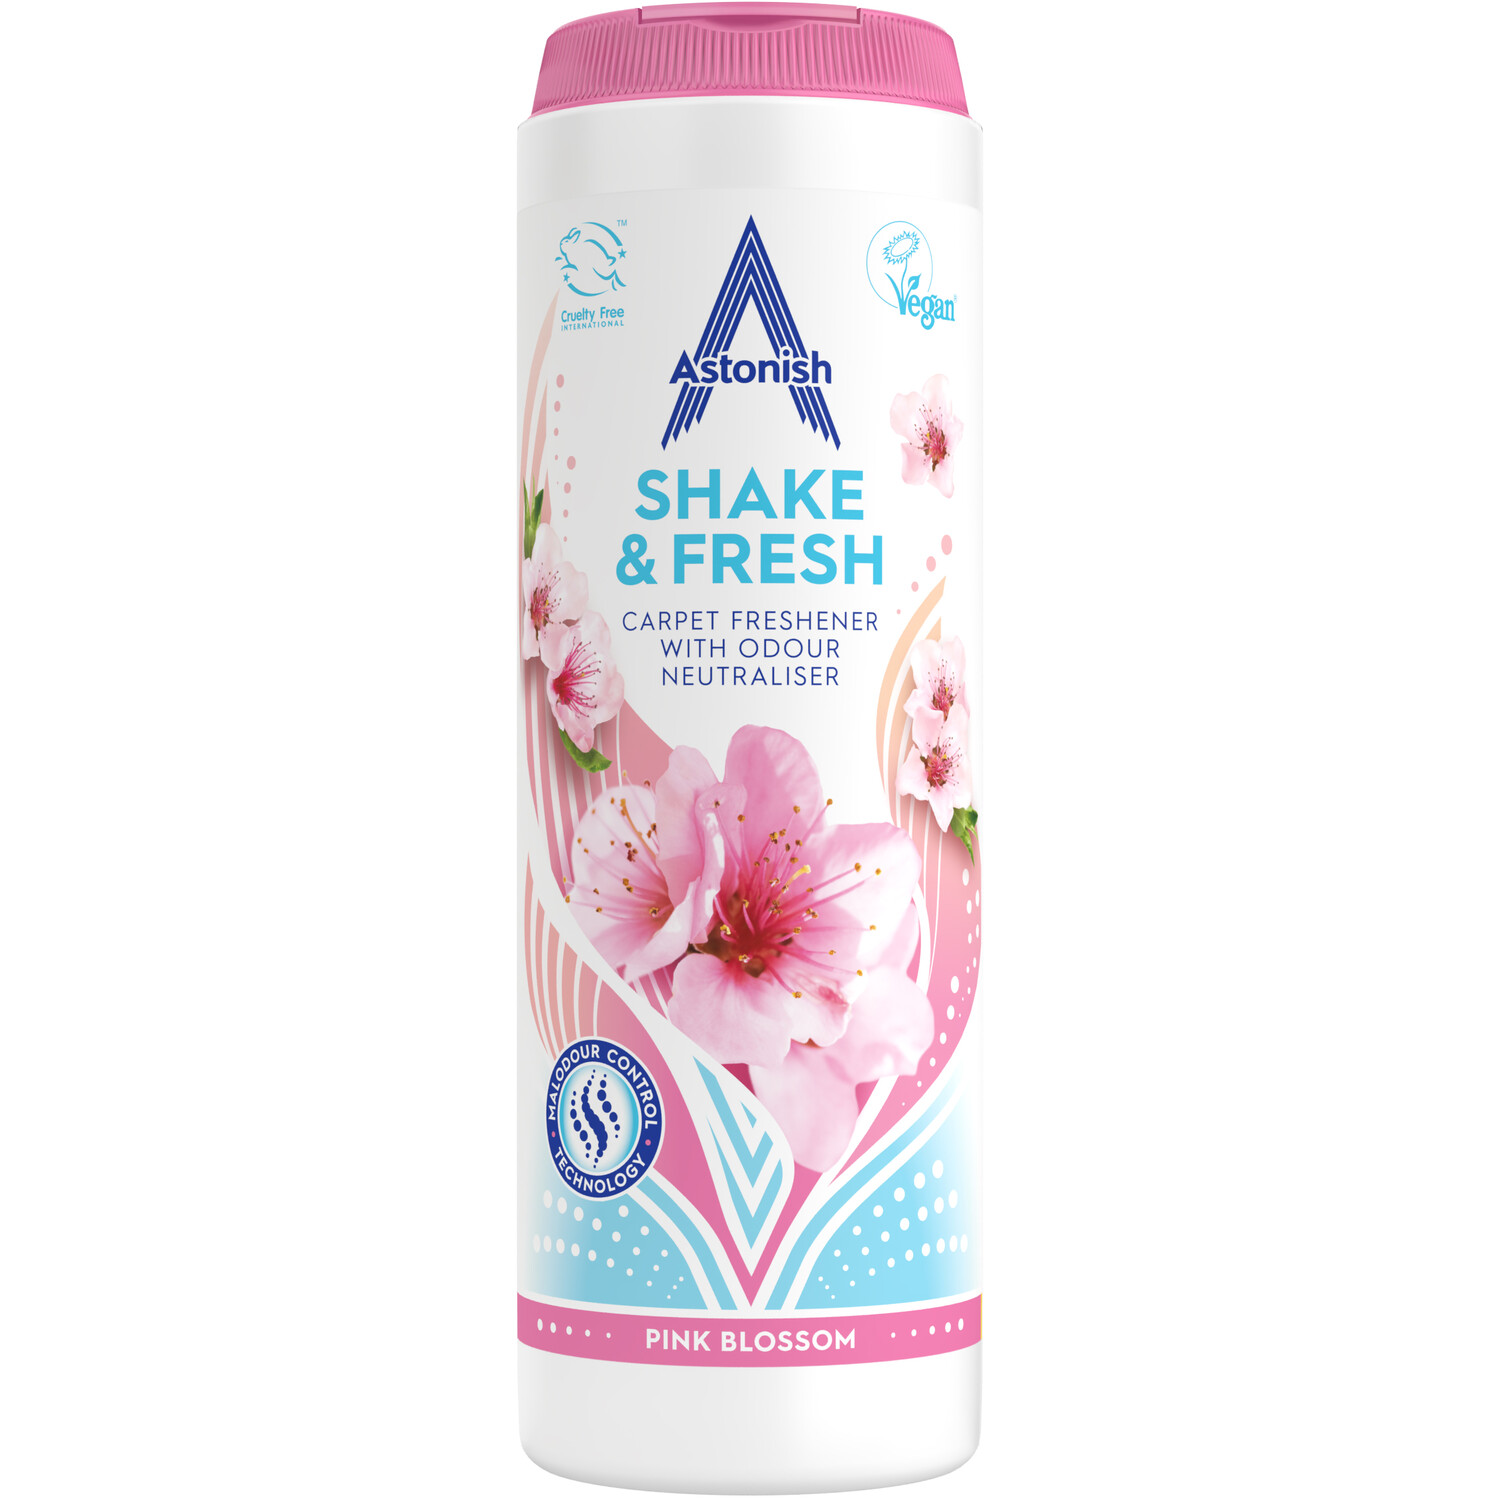 Astonish Shake and Fresh Carpet Freshener - Pink Blossom Image